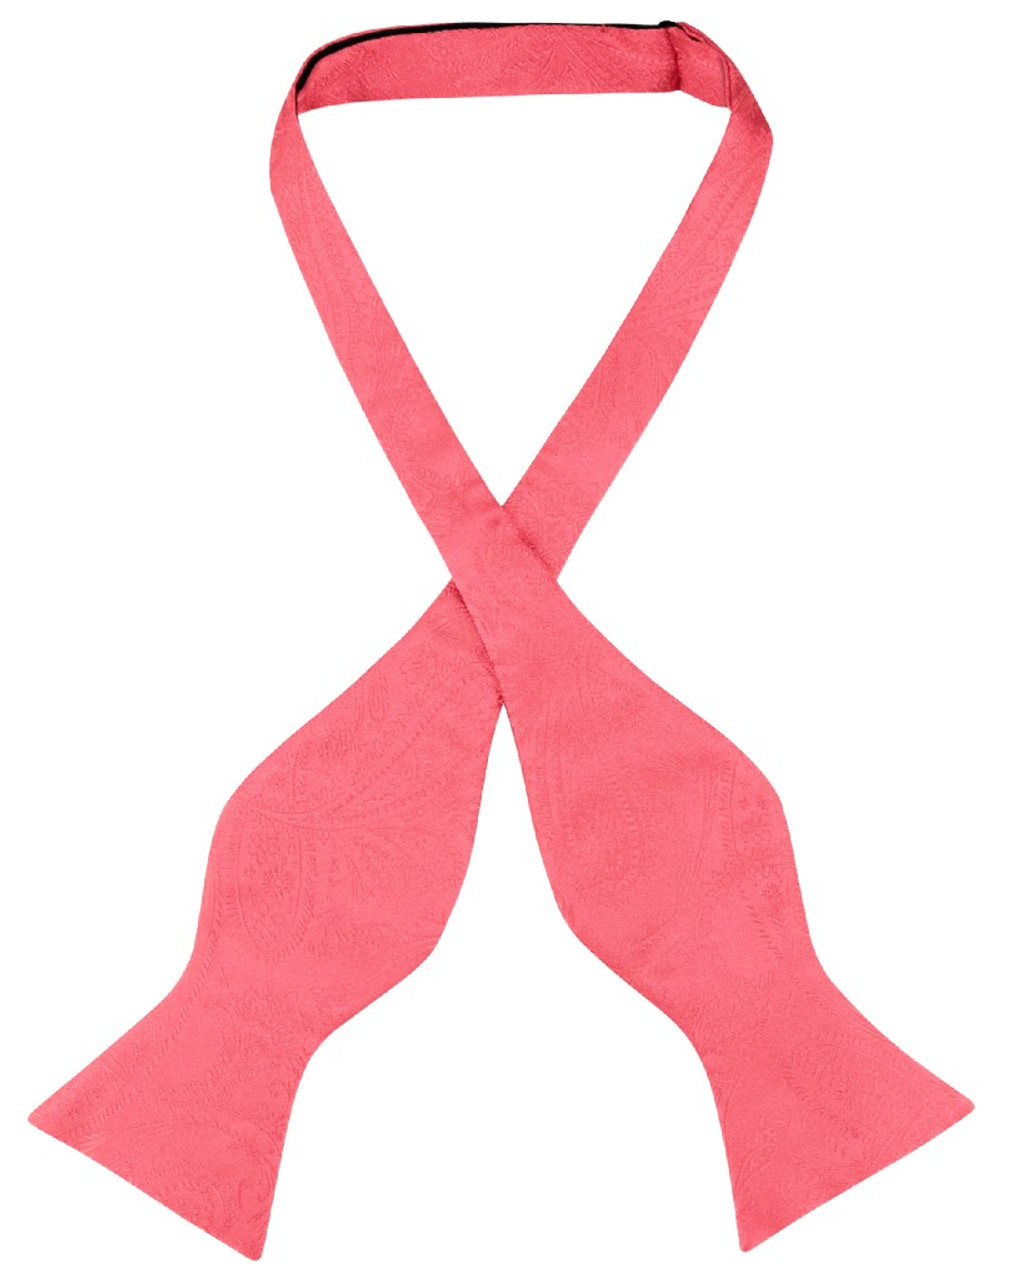 Vesuvio Napoli Self Tie Bow Tie Coral Pink Paisley Mens BowTie